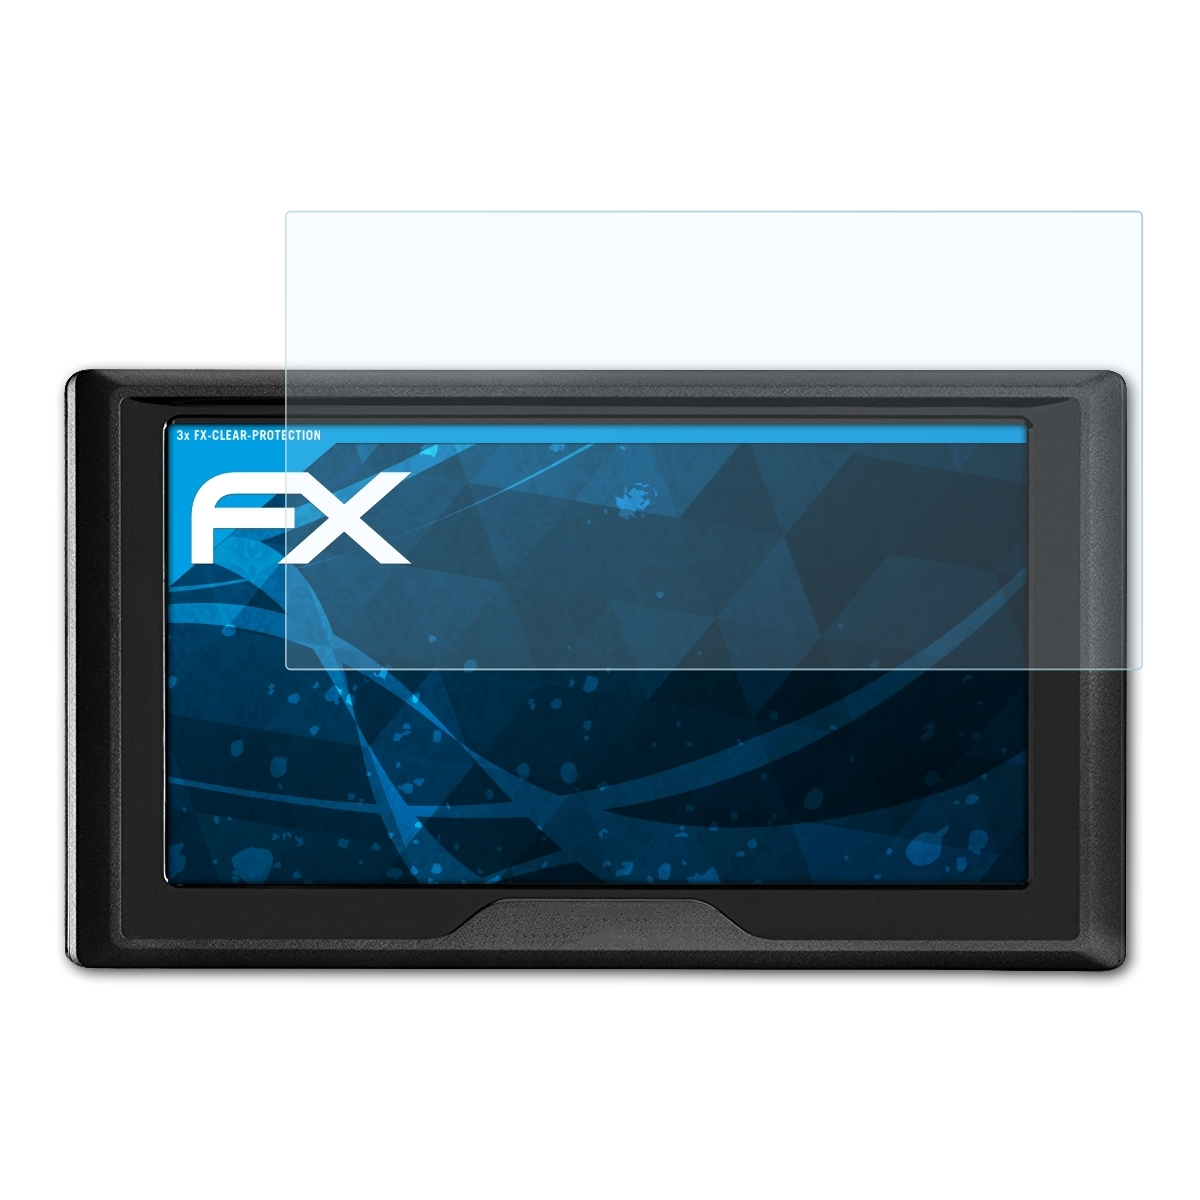 ATFOLIX 3x FX-Clear Displayschutz(für Garmin Drive 61LMT-S)